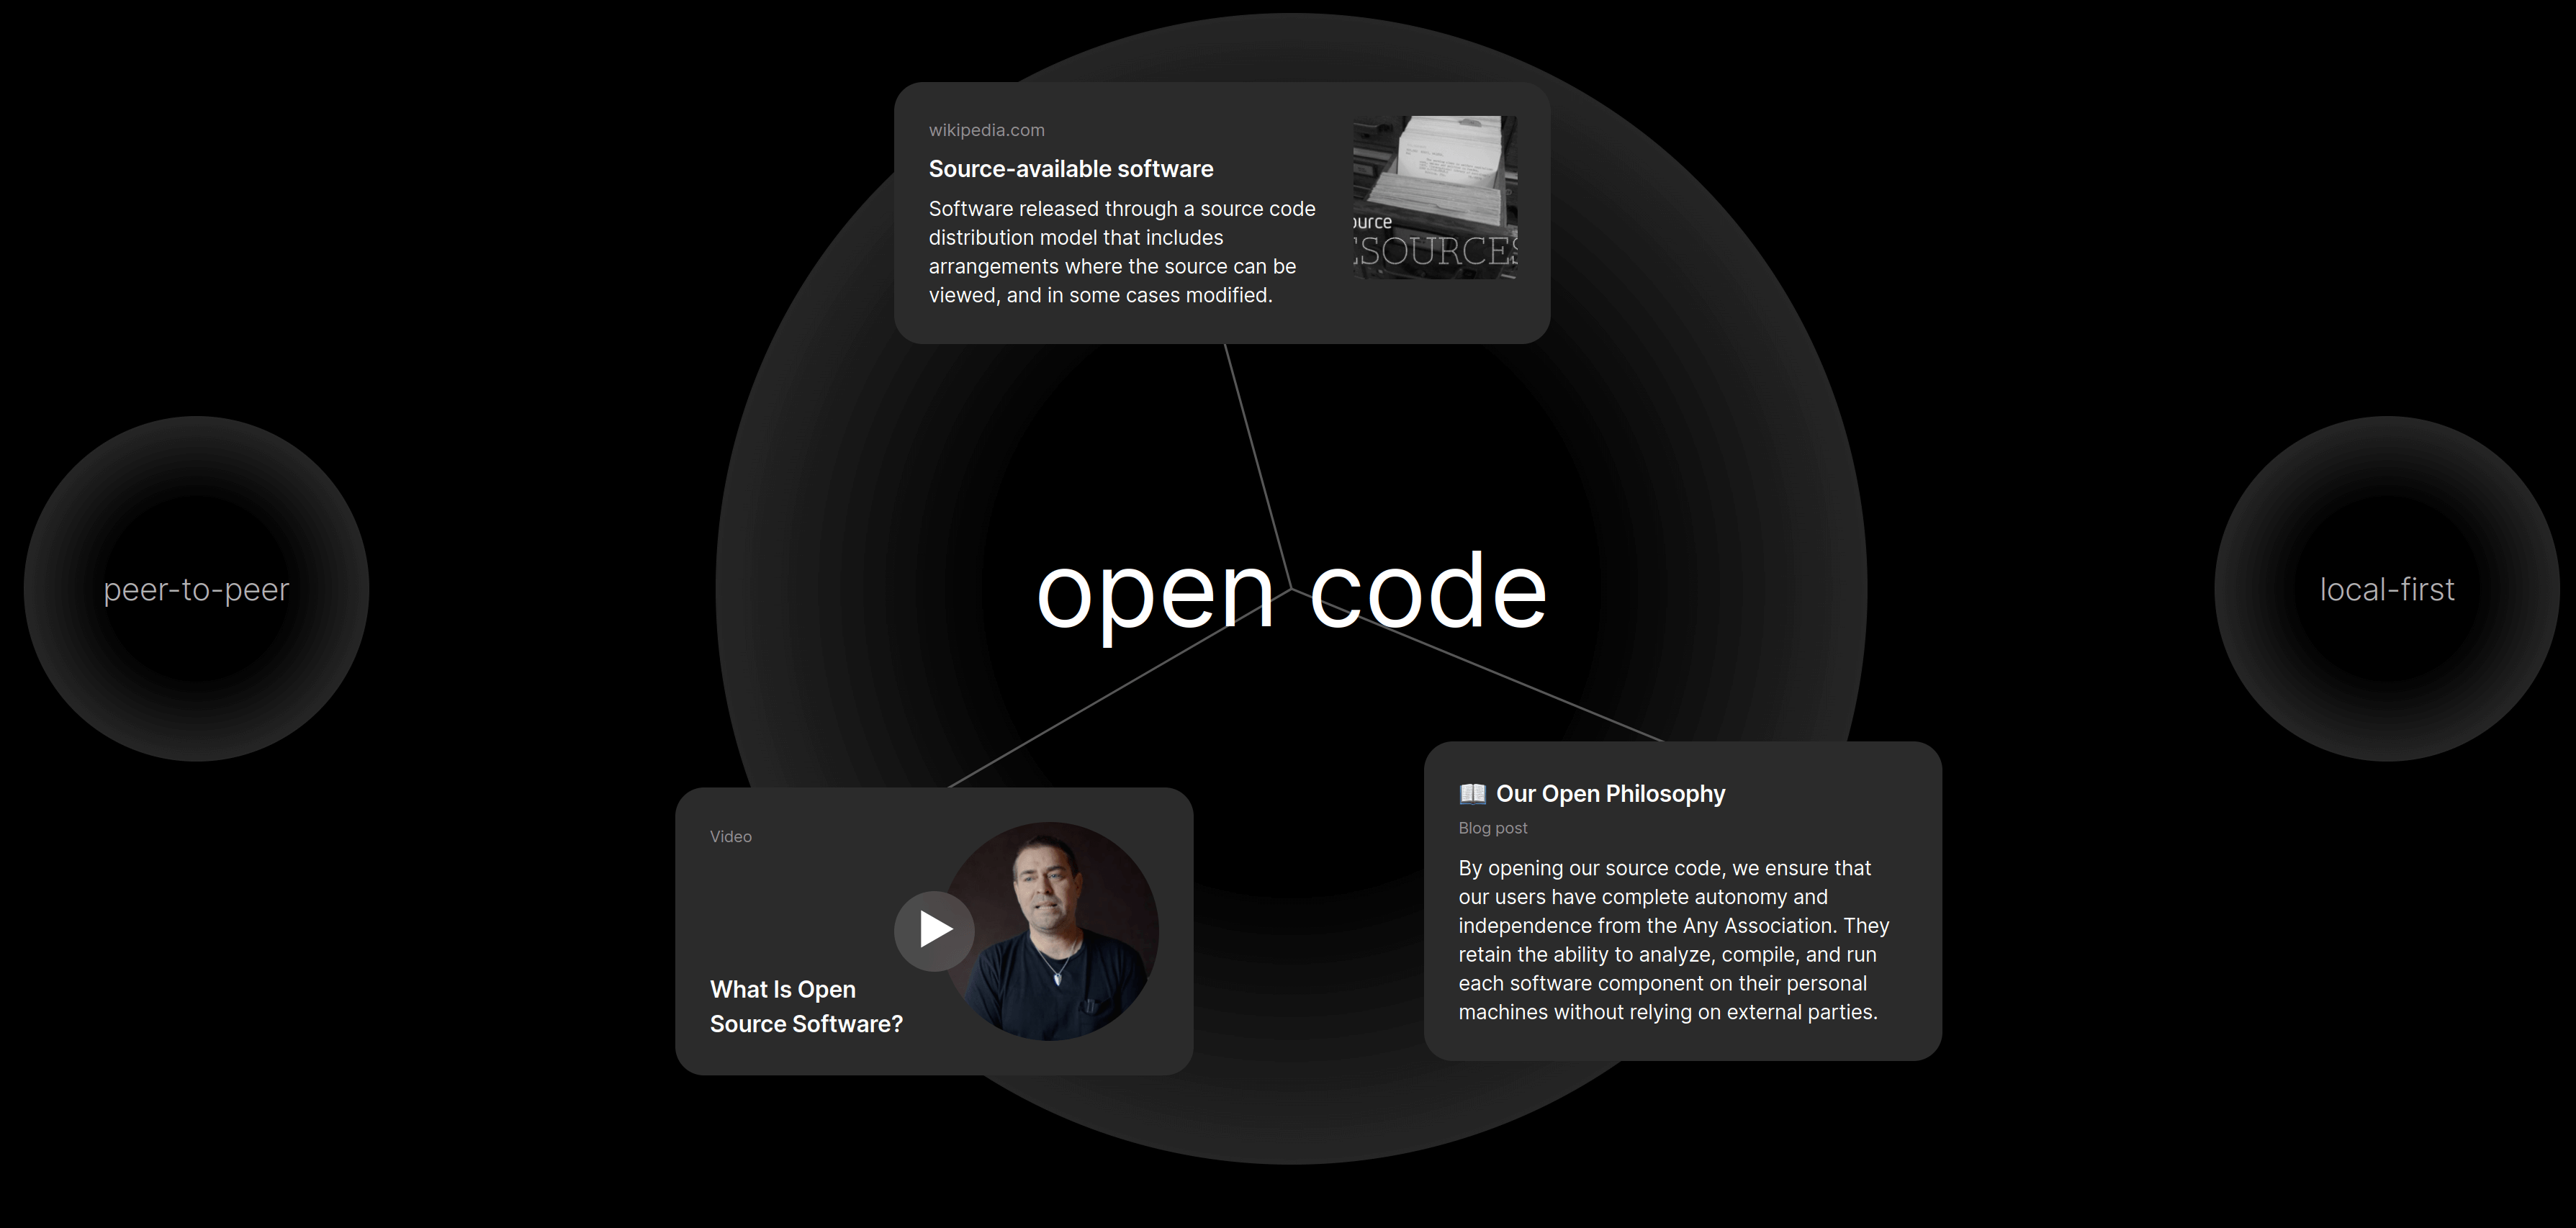 anytype website screenshot showing open code